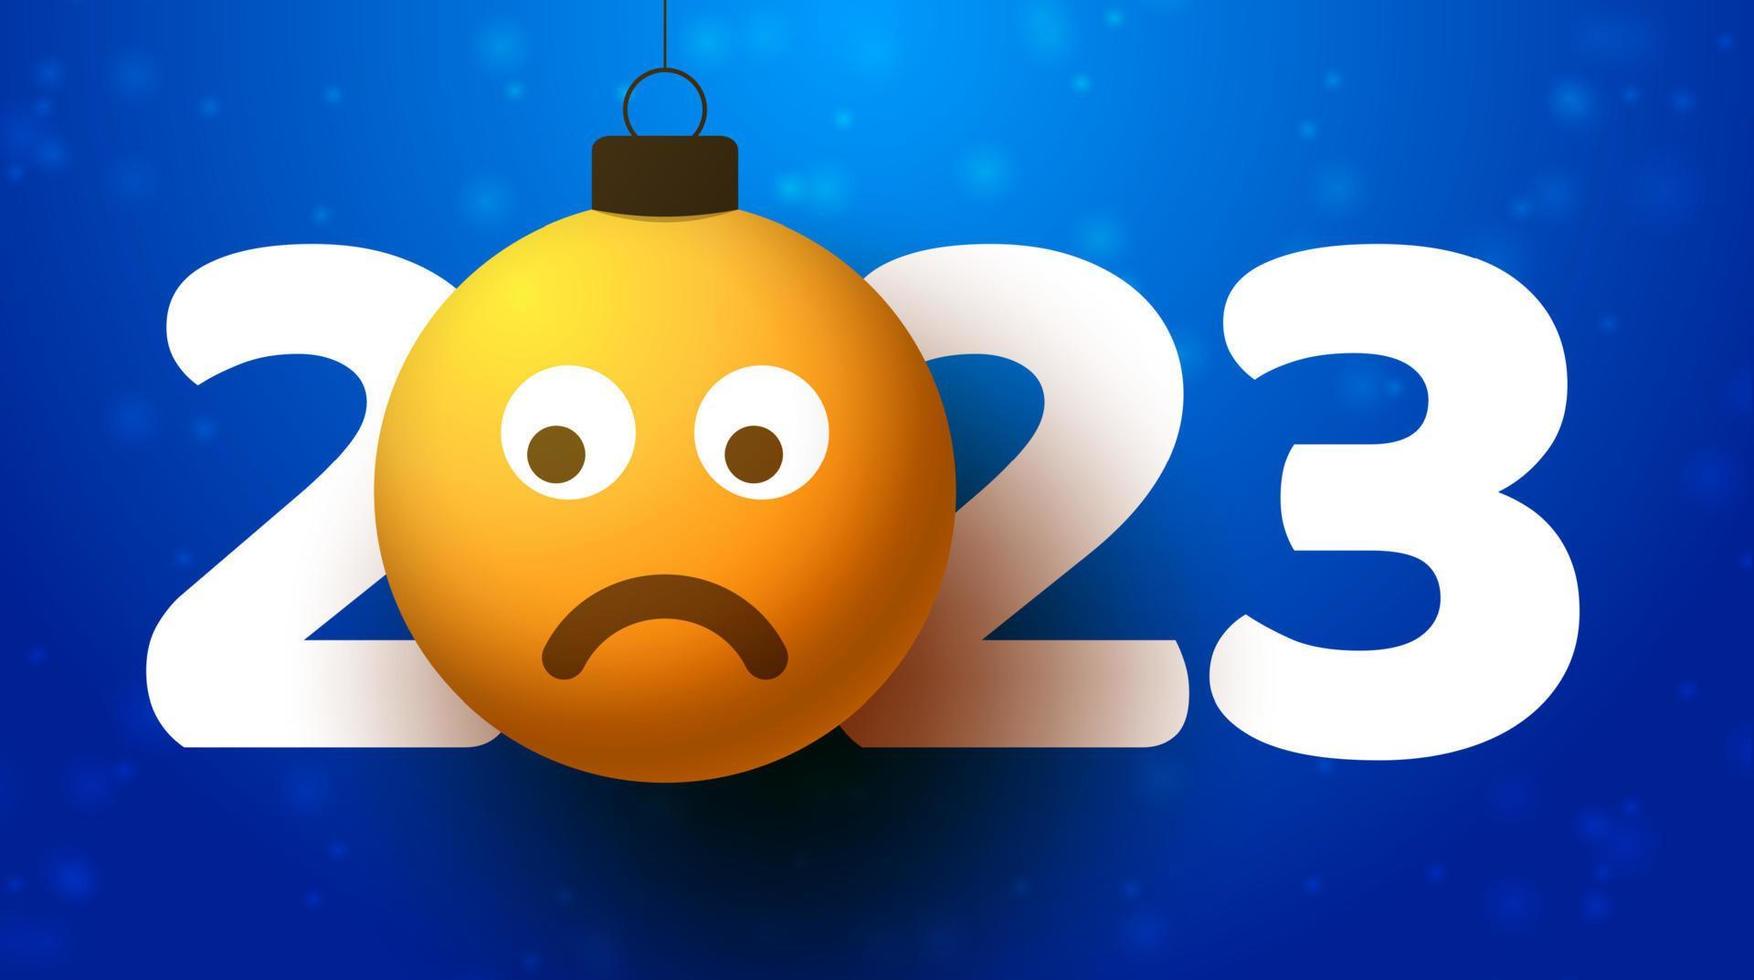 biglietto di auguri per il nuovo anno 2023 con faccina emoji triste che si appende al filo come un giocattolo di Natale, una pallina o una pallina. illustrazione vettoriale del concetto di emozione del nuovo anno